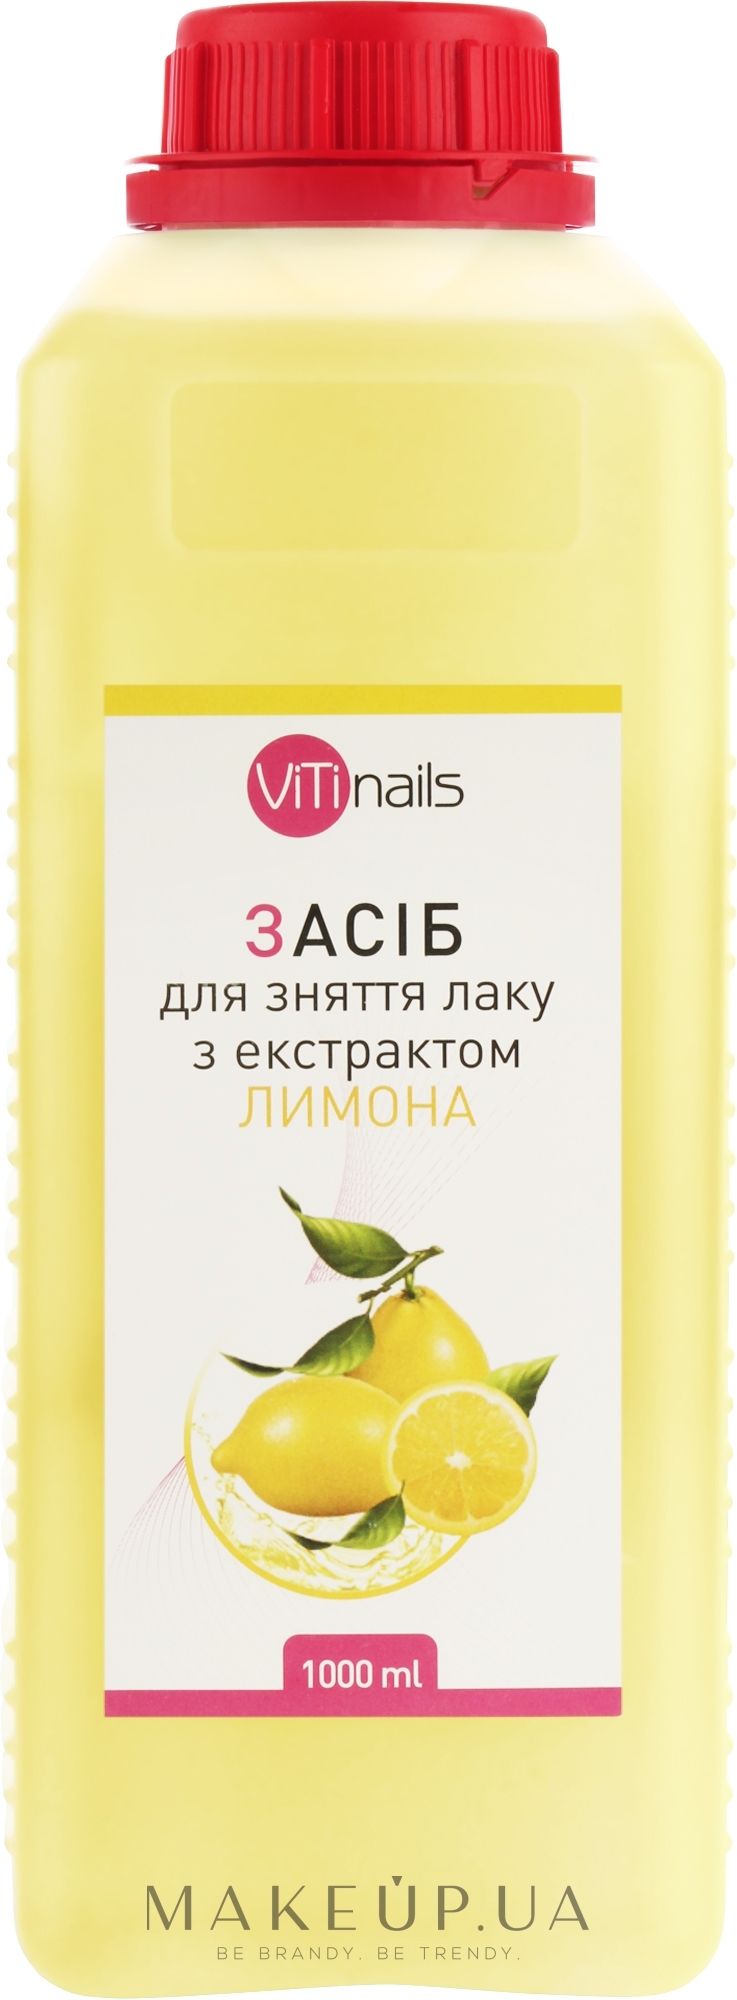 Рідина для зняття лаку з екстрактом лимона - ViTinails — фото 1000ml